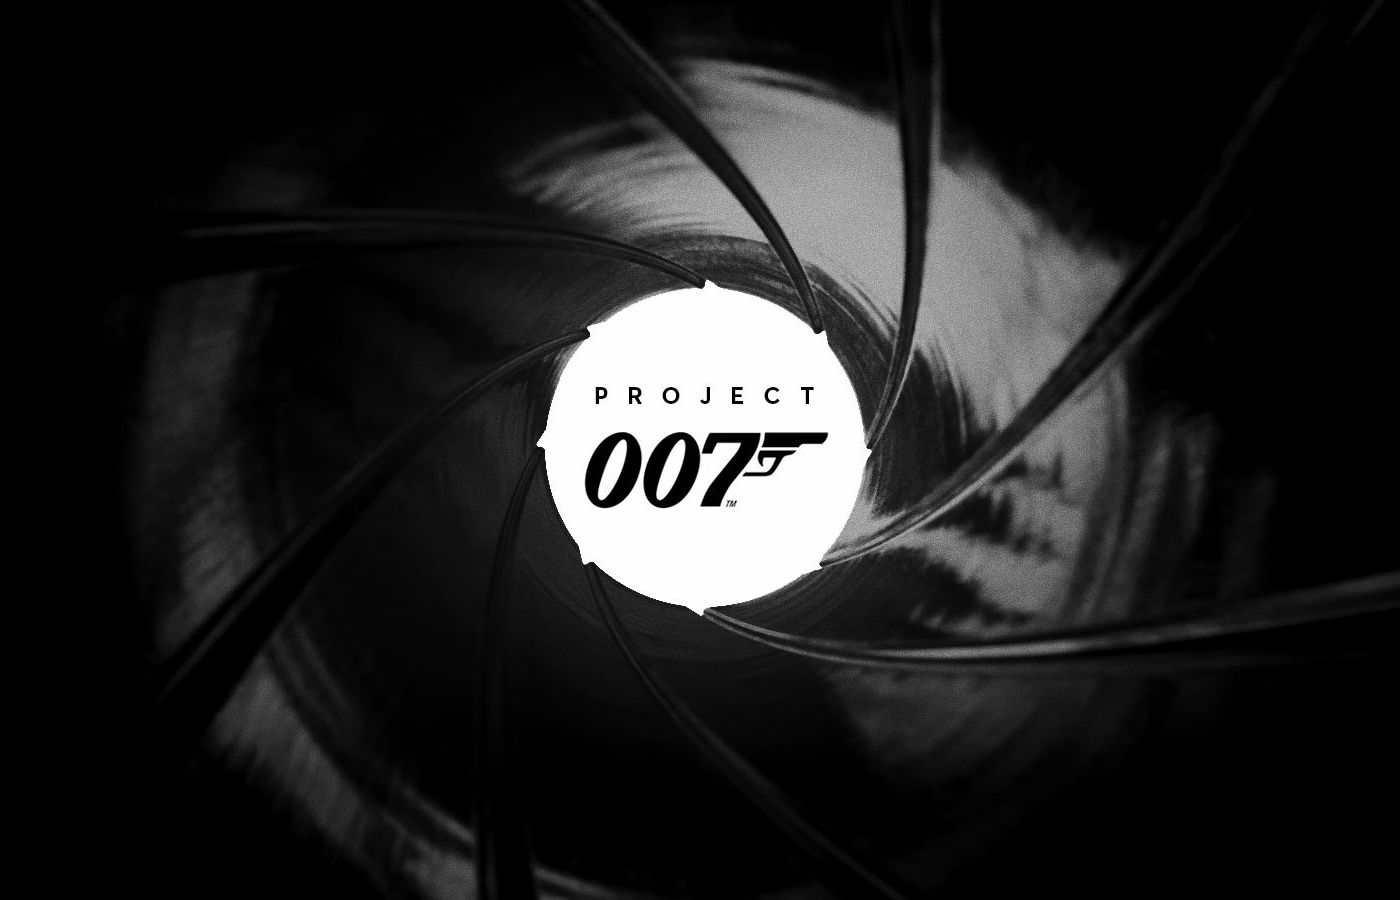 James Bond : le jeu vidéo d'IO Interactive (Hitman) livre ses premiers détails